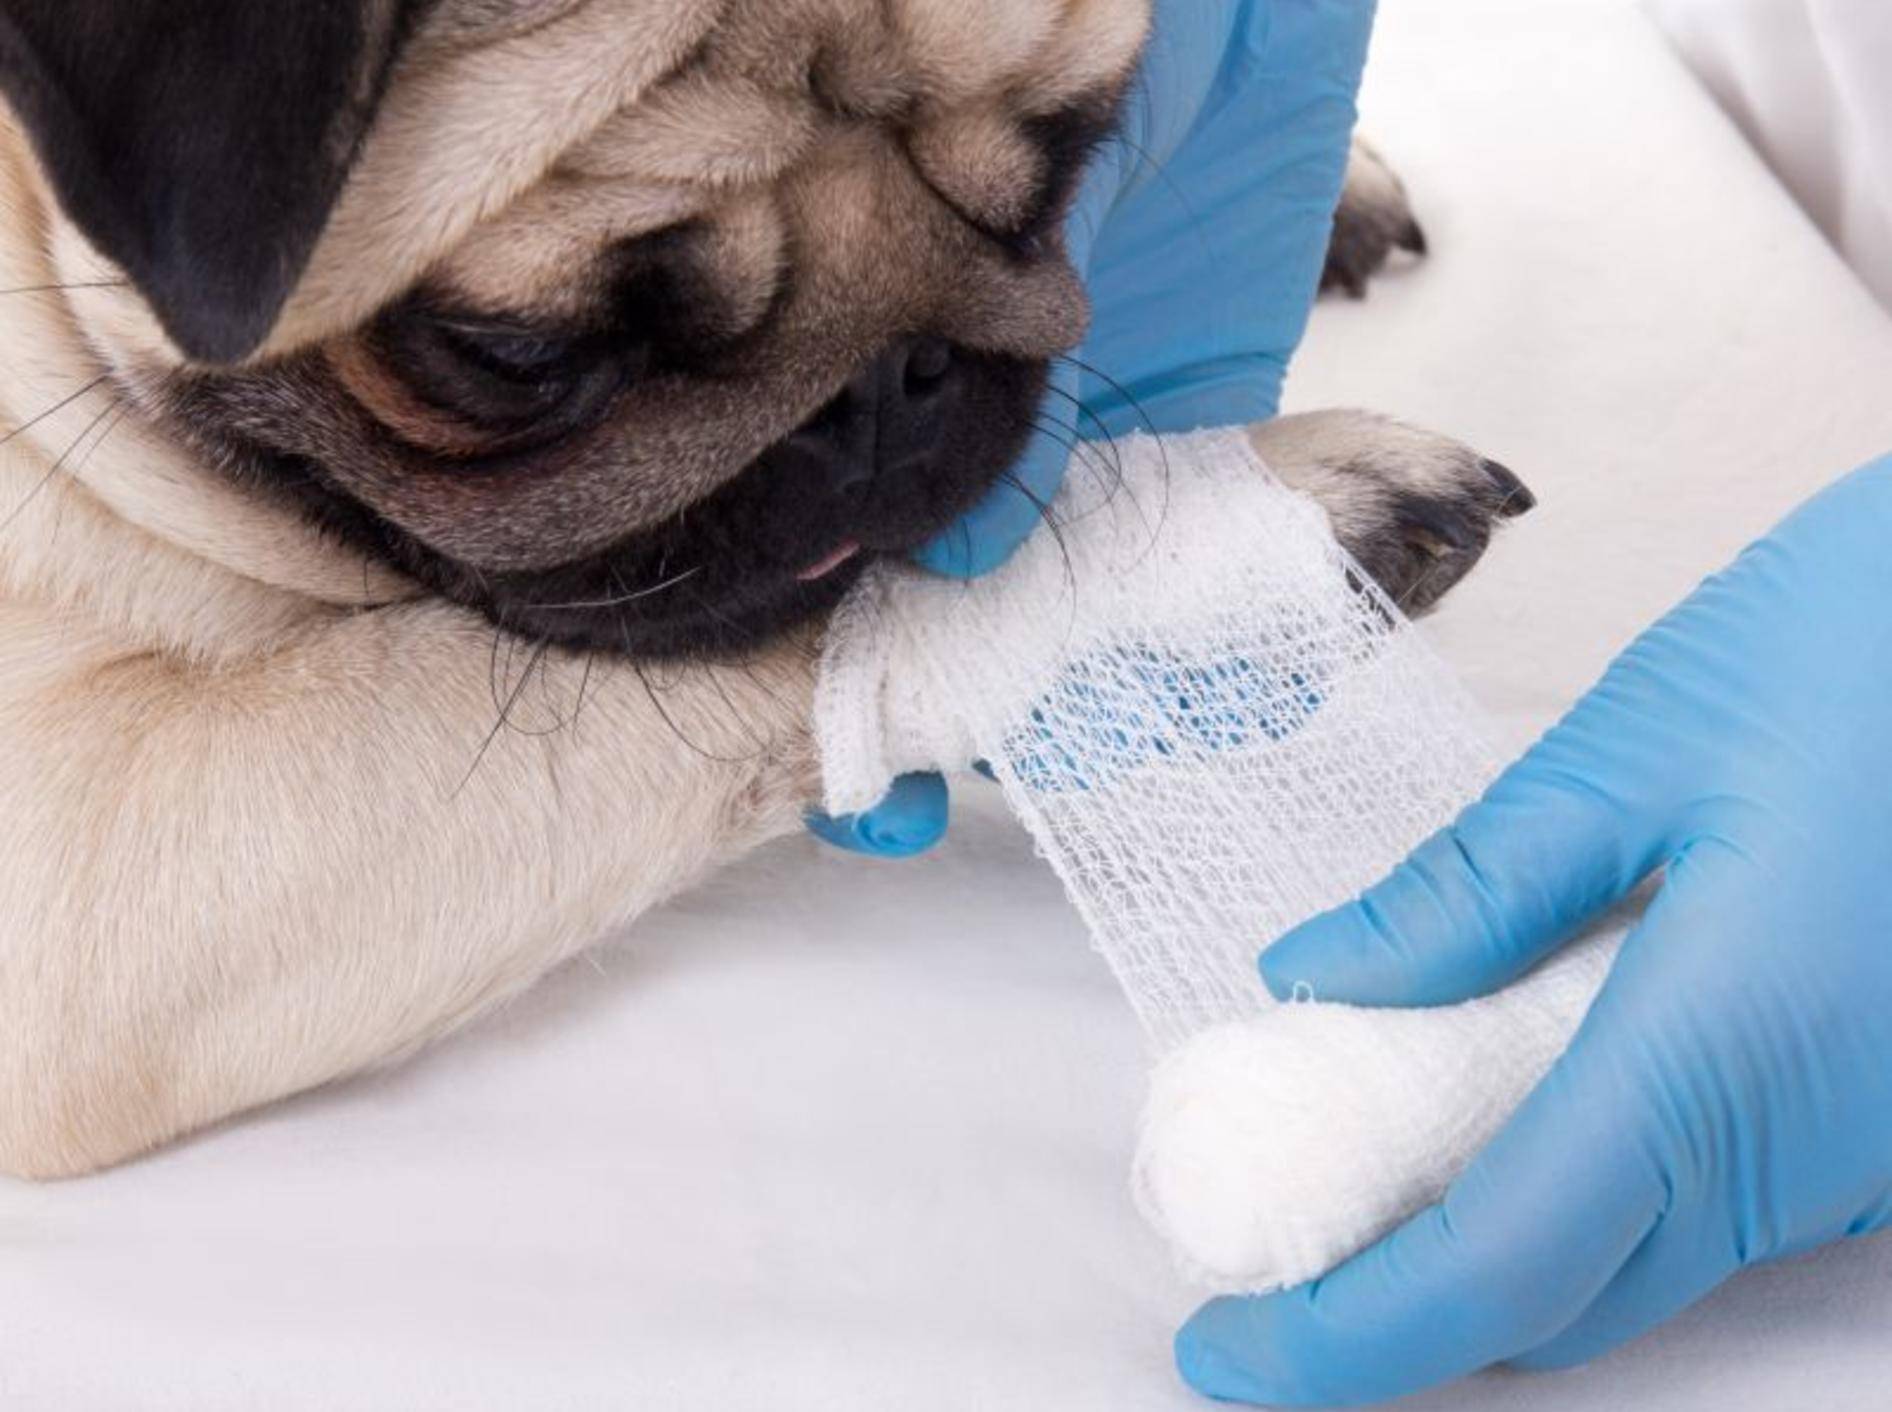 Entzündete Krallen: Ein Pfotenverband schützt die Haut des Hundes – Bild: Shutterstock / Di Studio